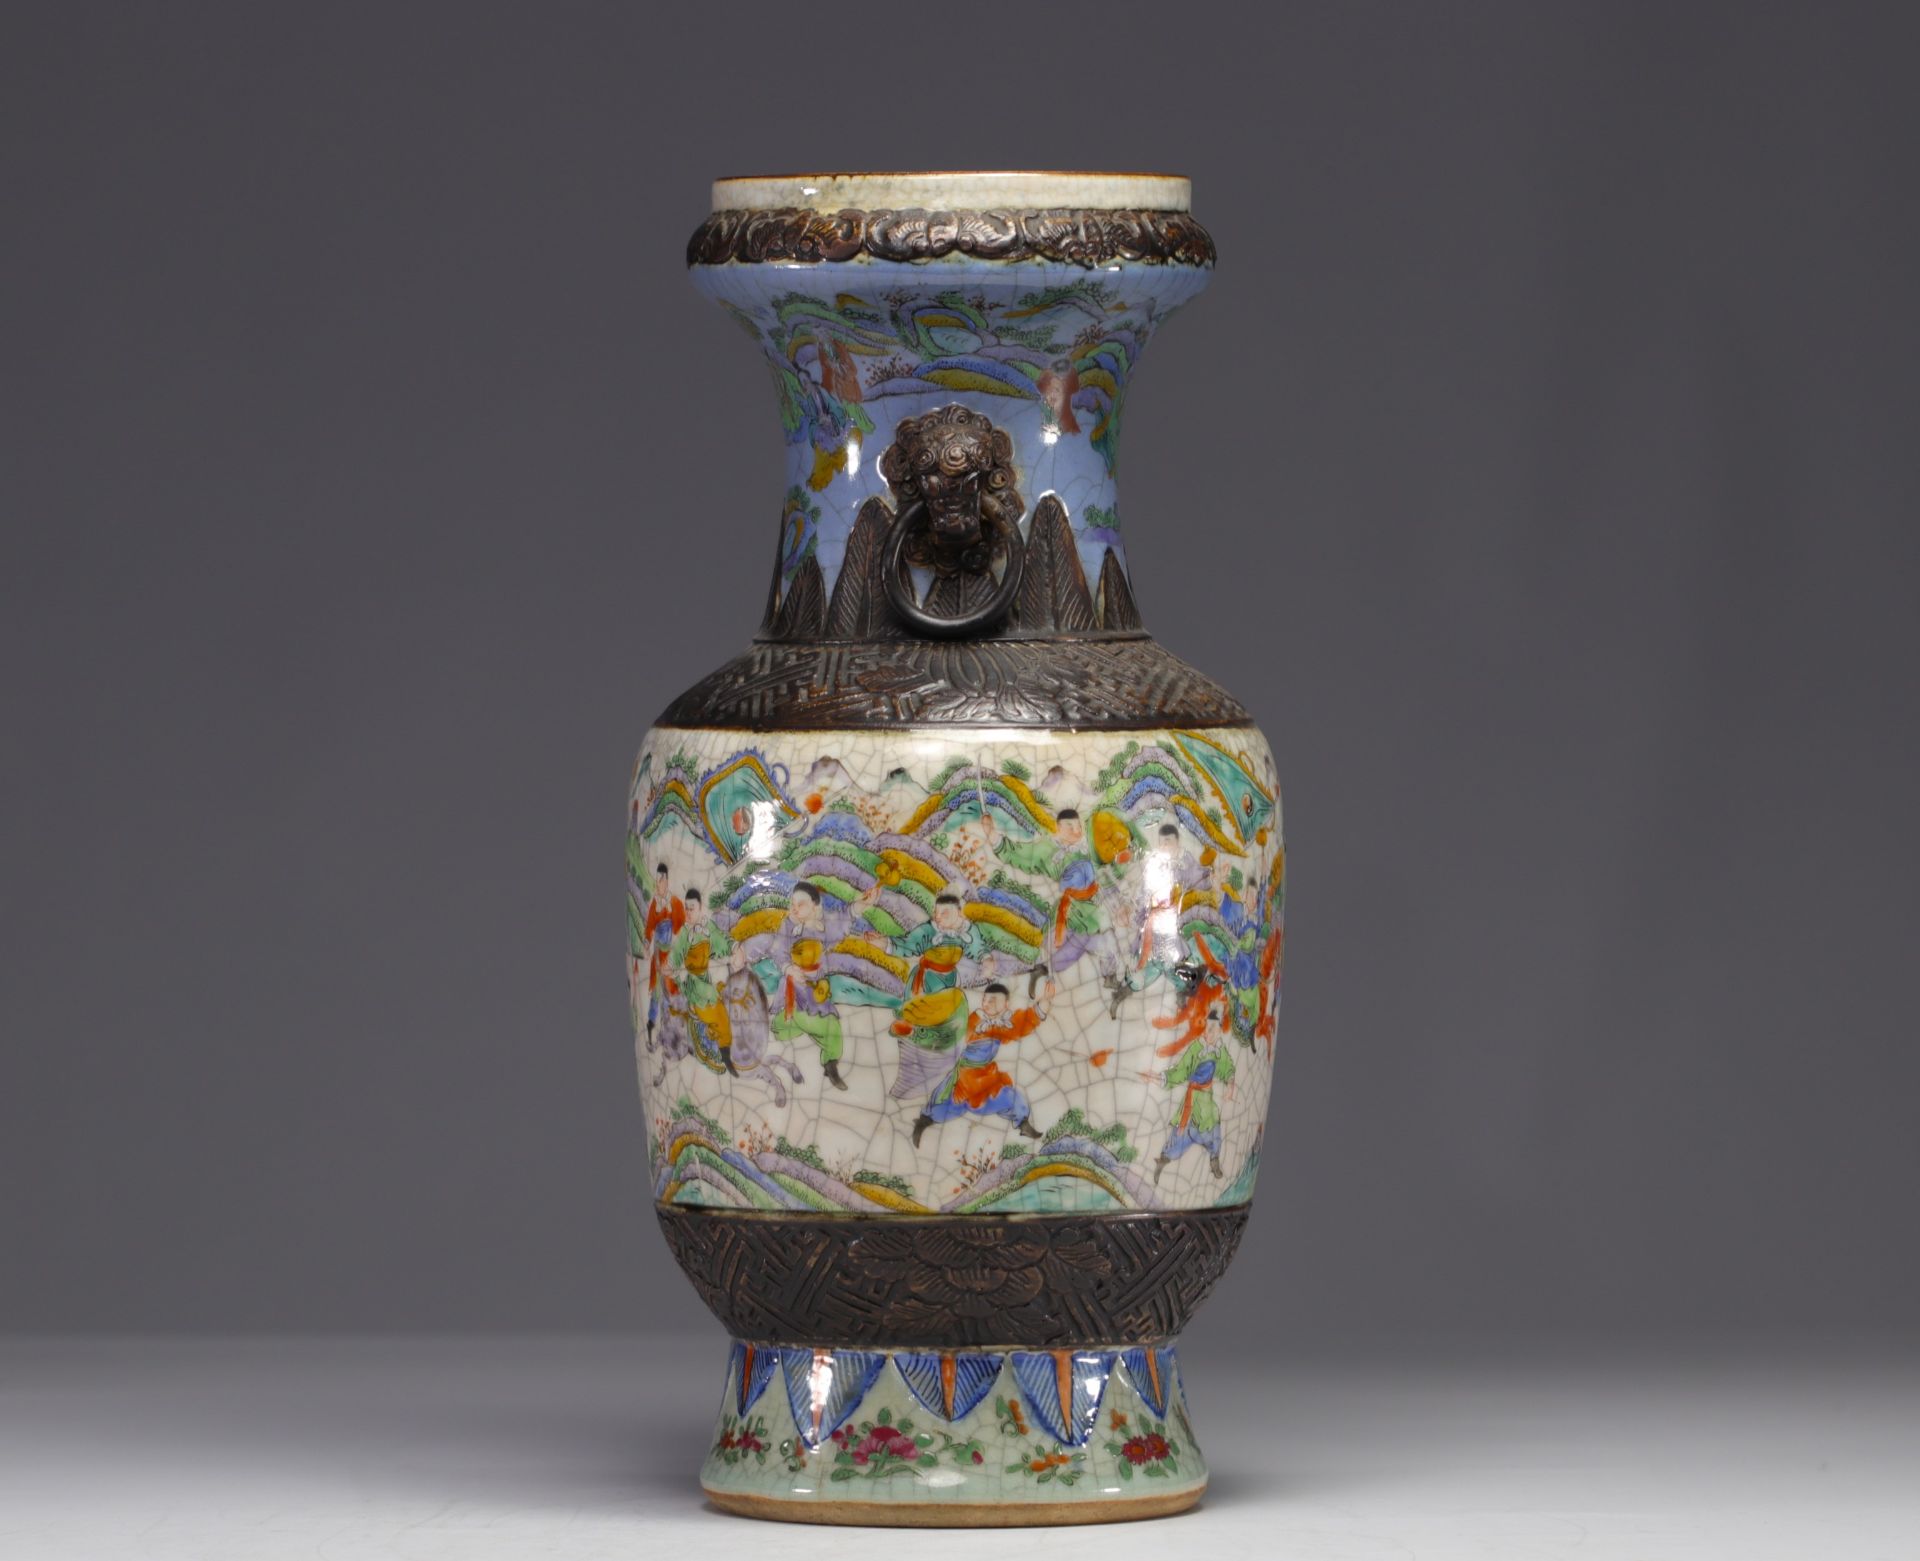 China - Nanking porcelain vase with battle scene decoration, 19th century. - Image 2 of 6